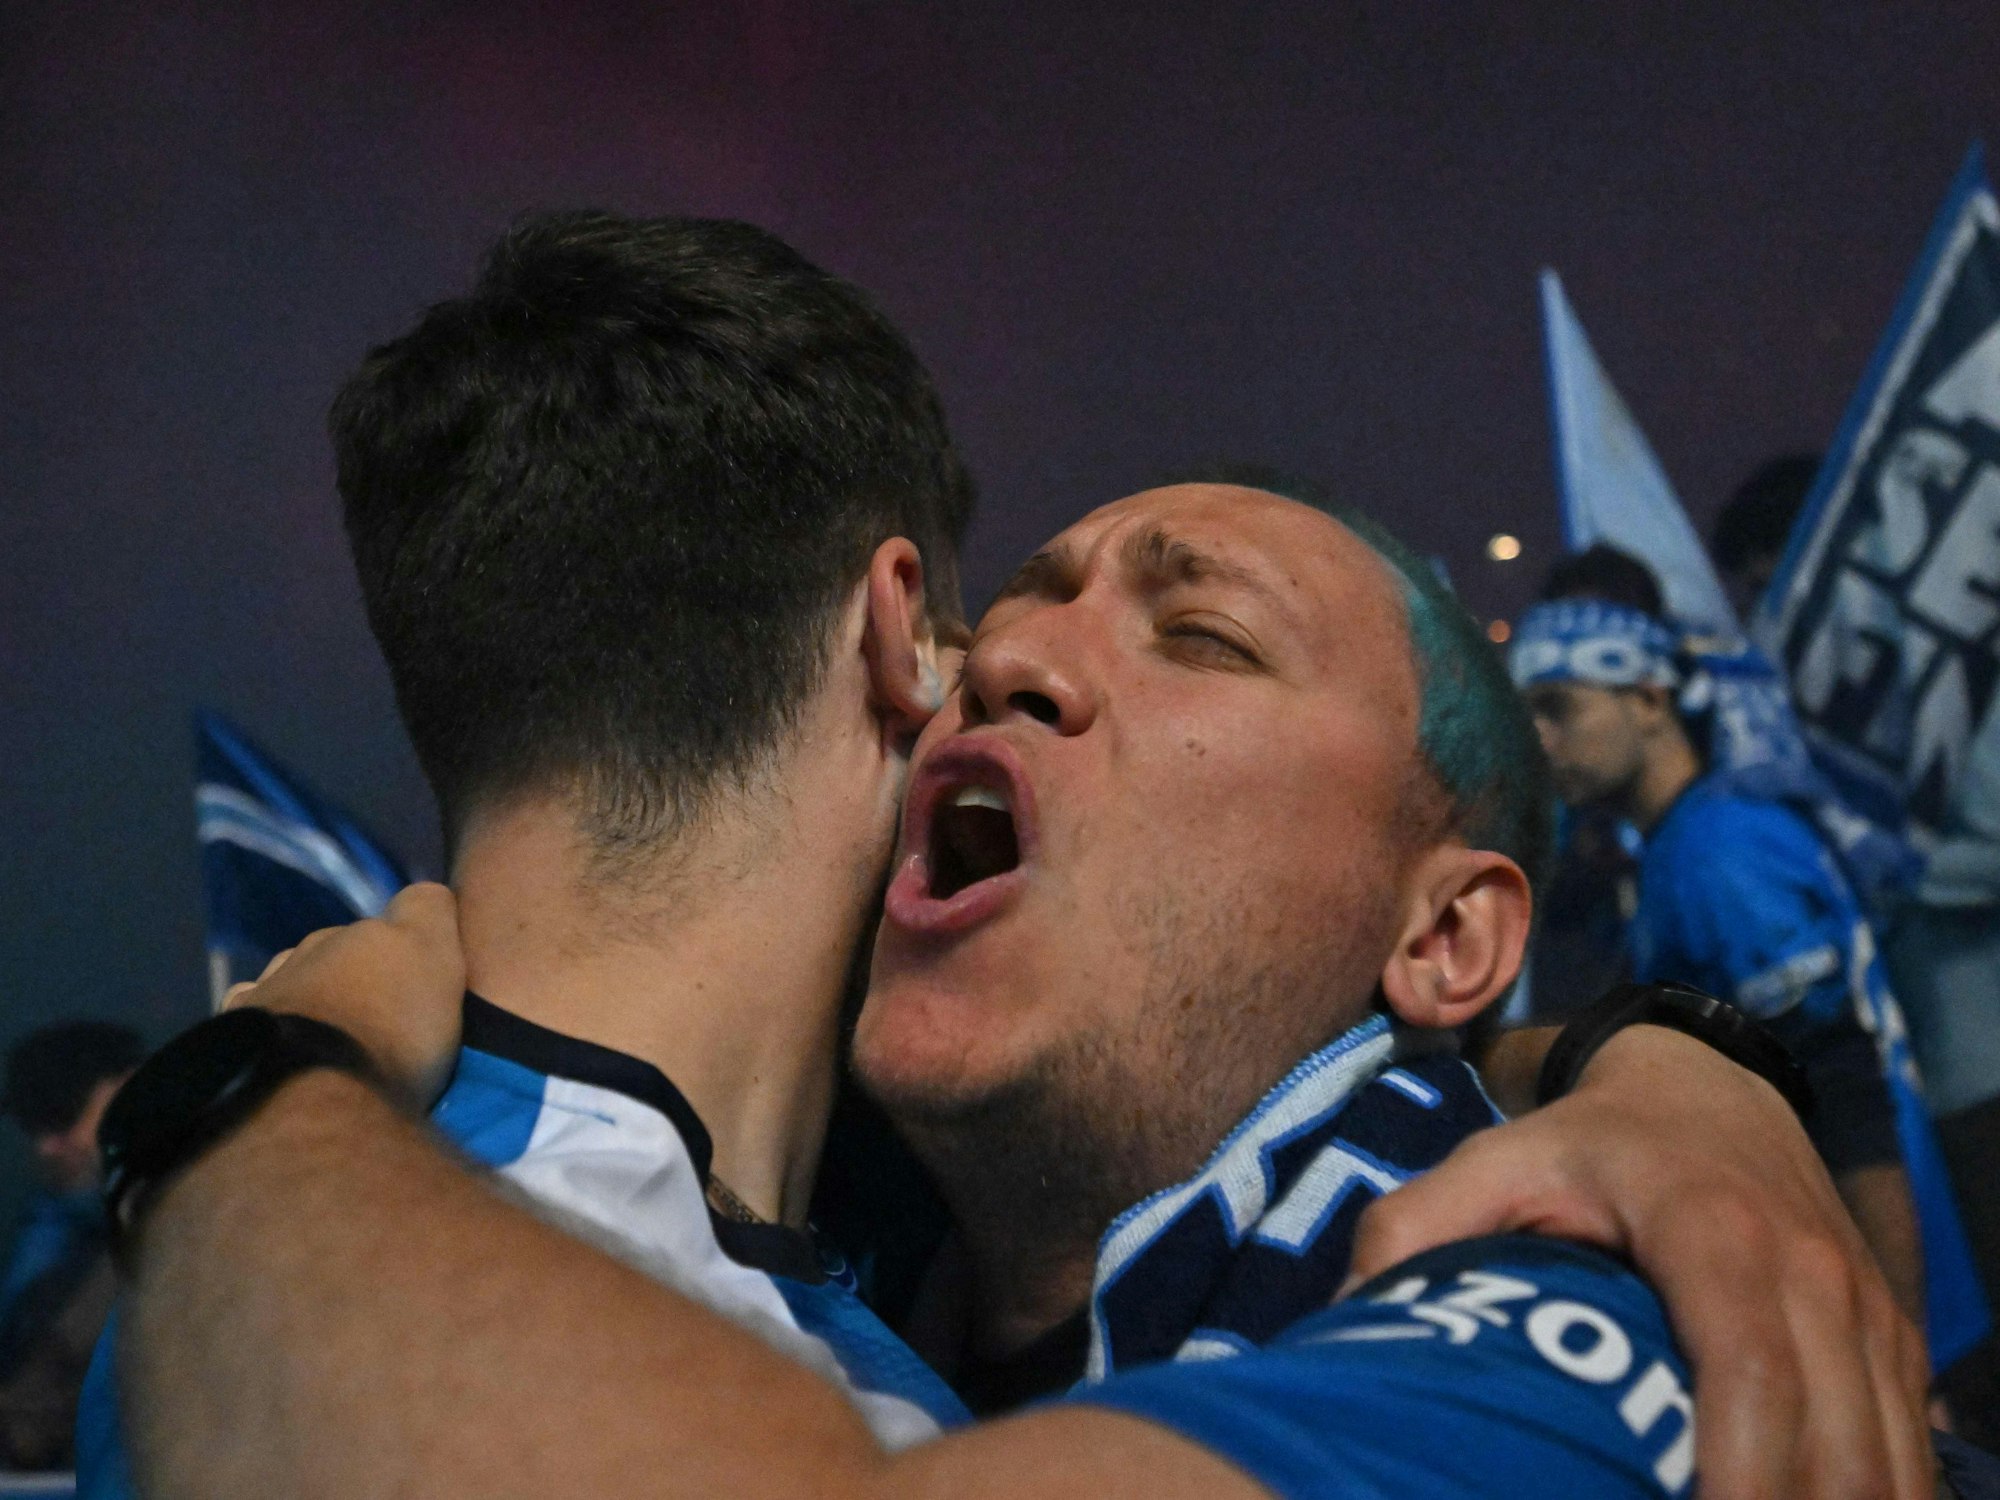 Napoli-Fans umarmen sich glücklich.